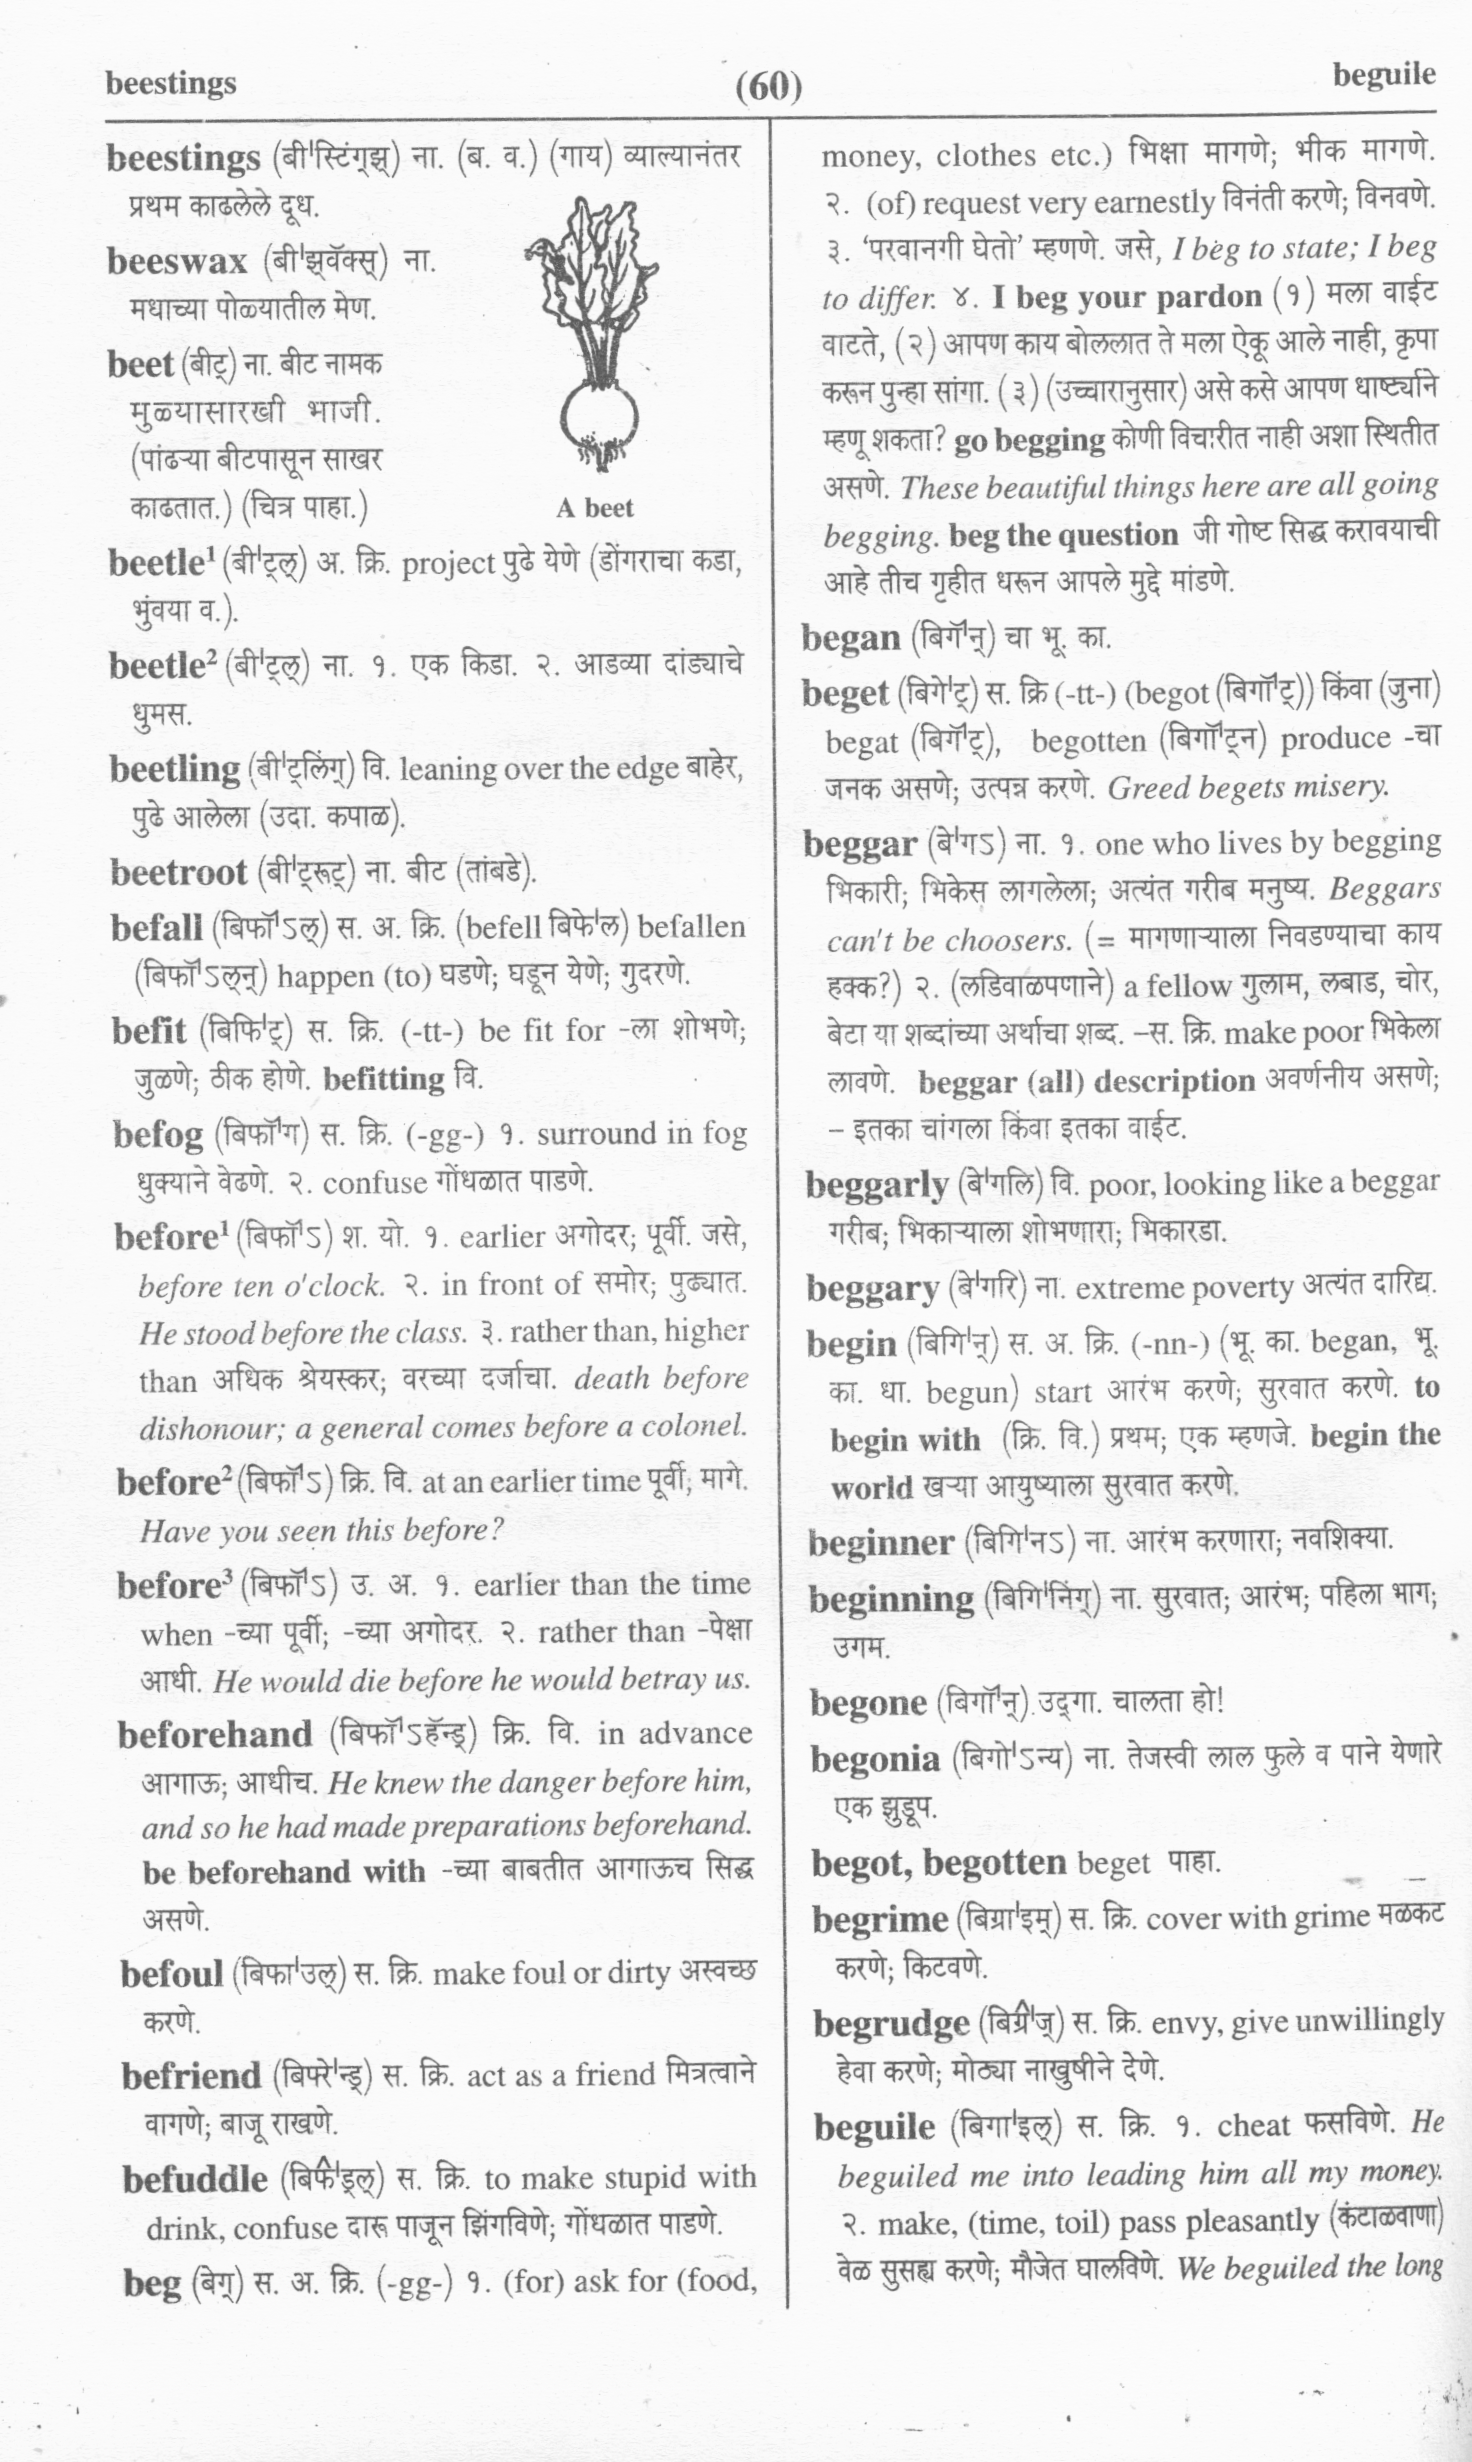 Marathi-English and English-Marathi Dictionary